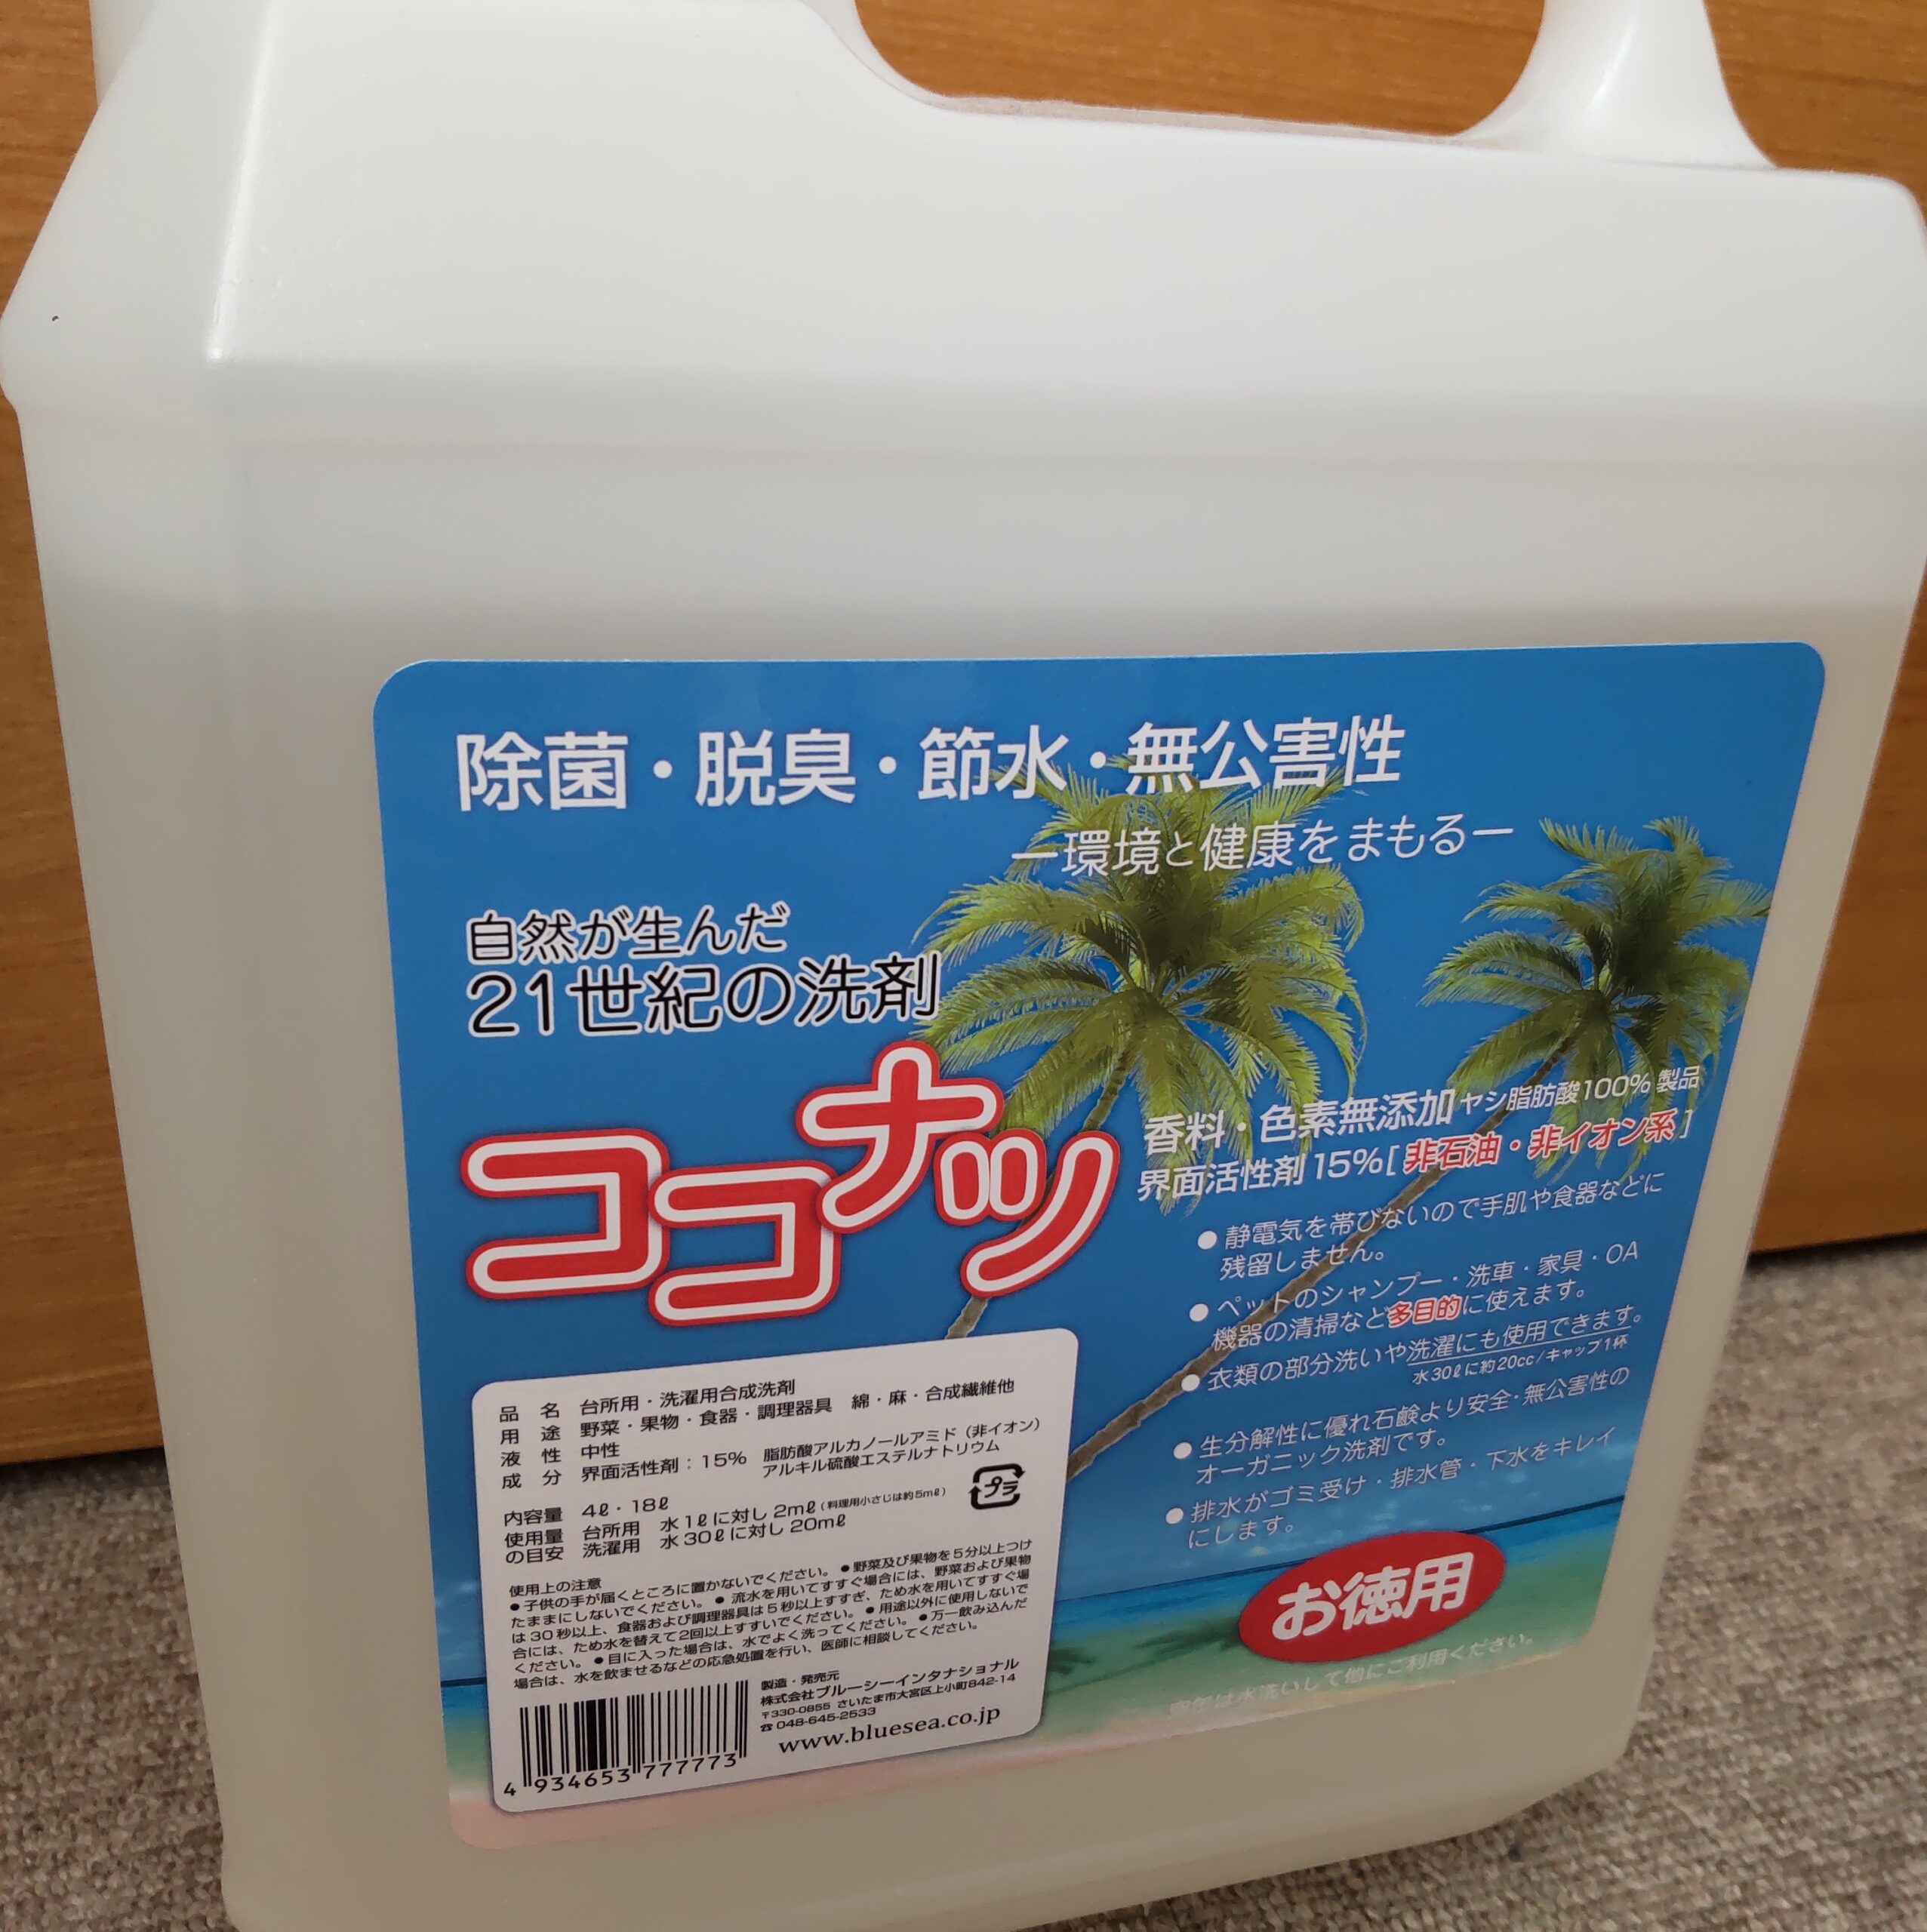 健康と環境をまもるココナッツ洗剤「ココナツ」 4L×4個セット - 乳液